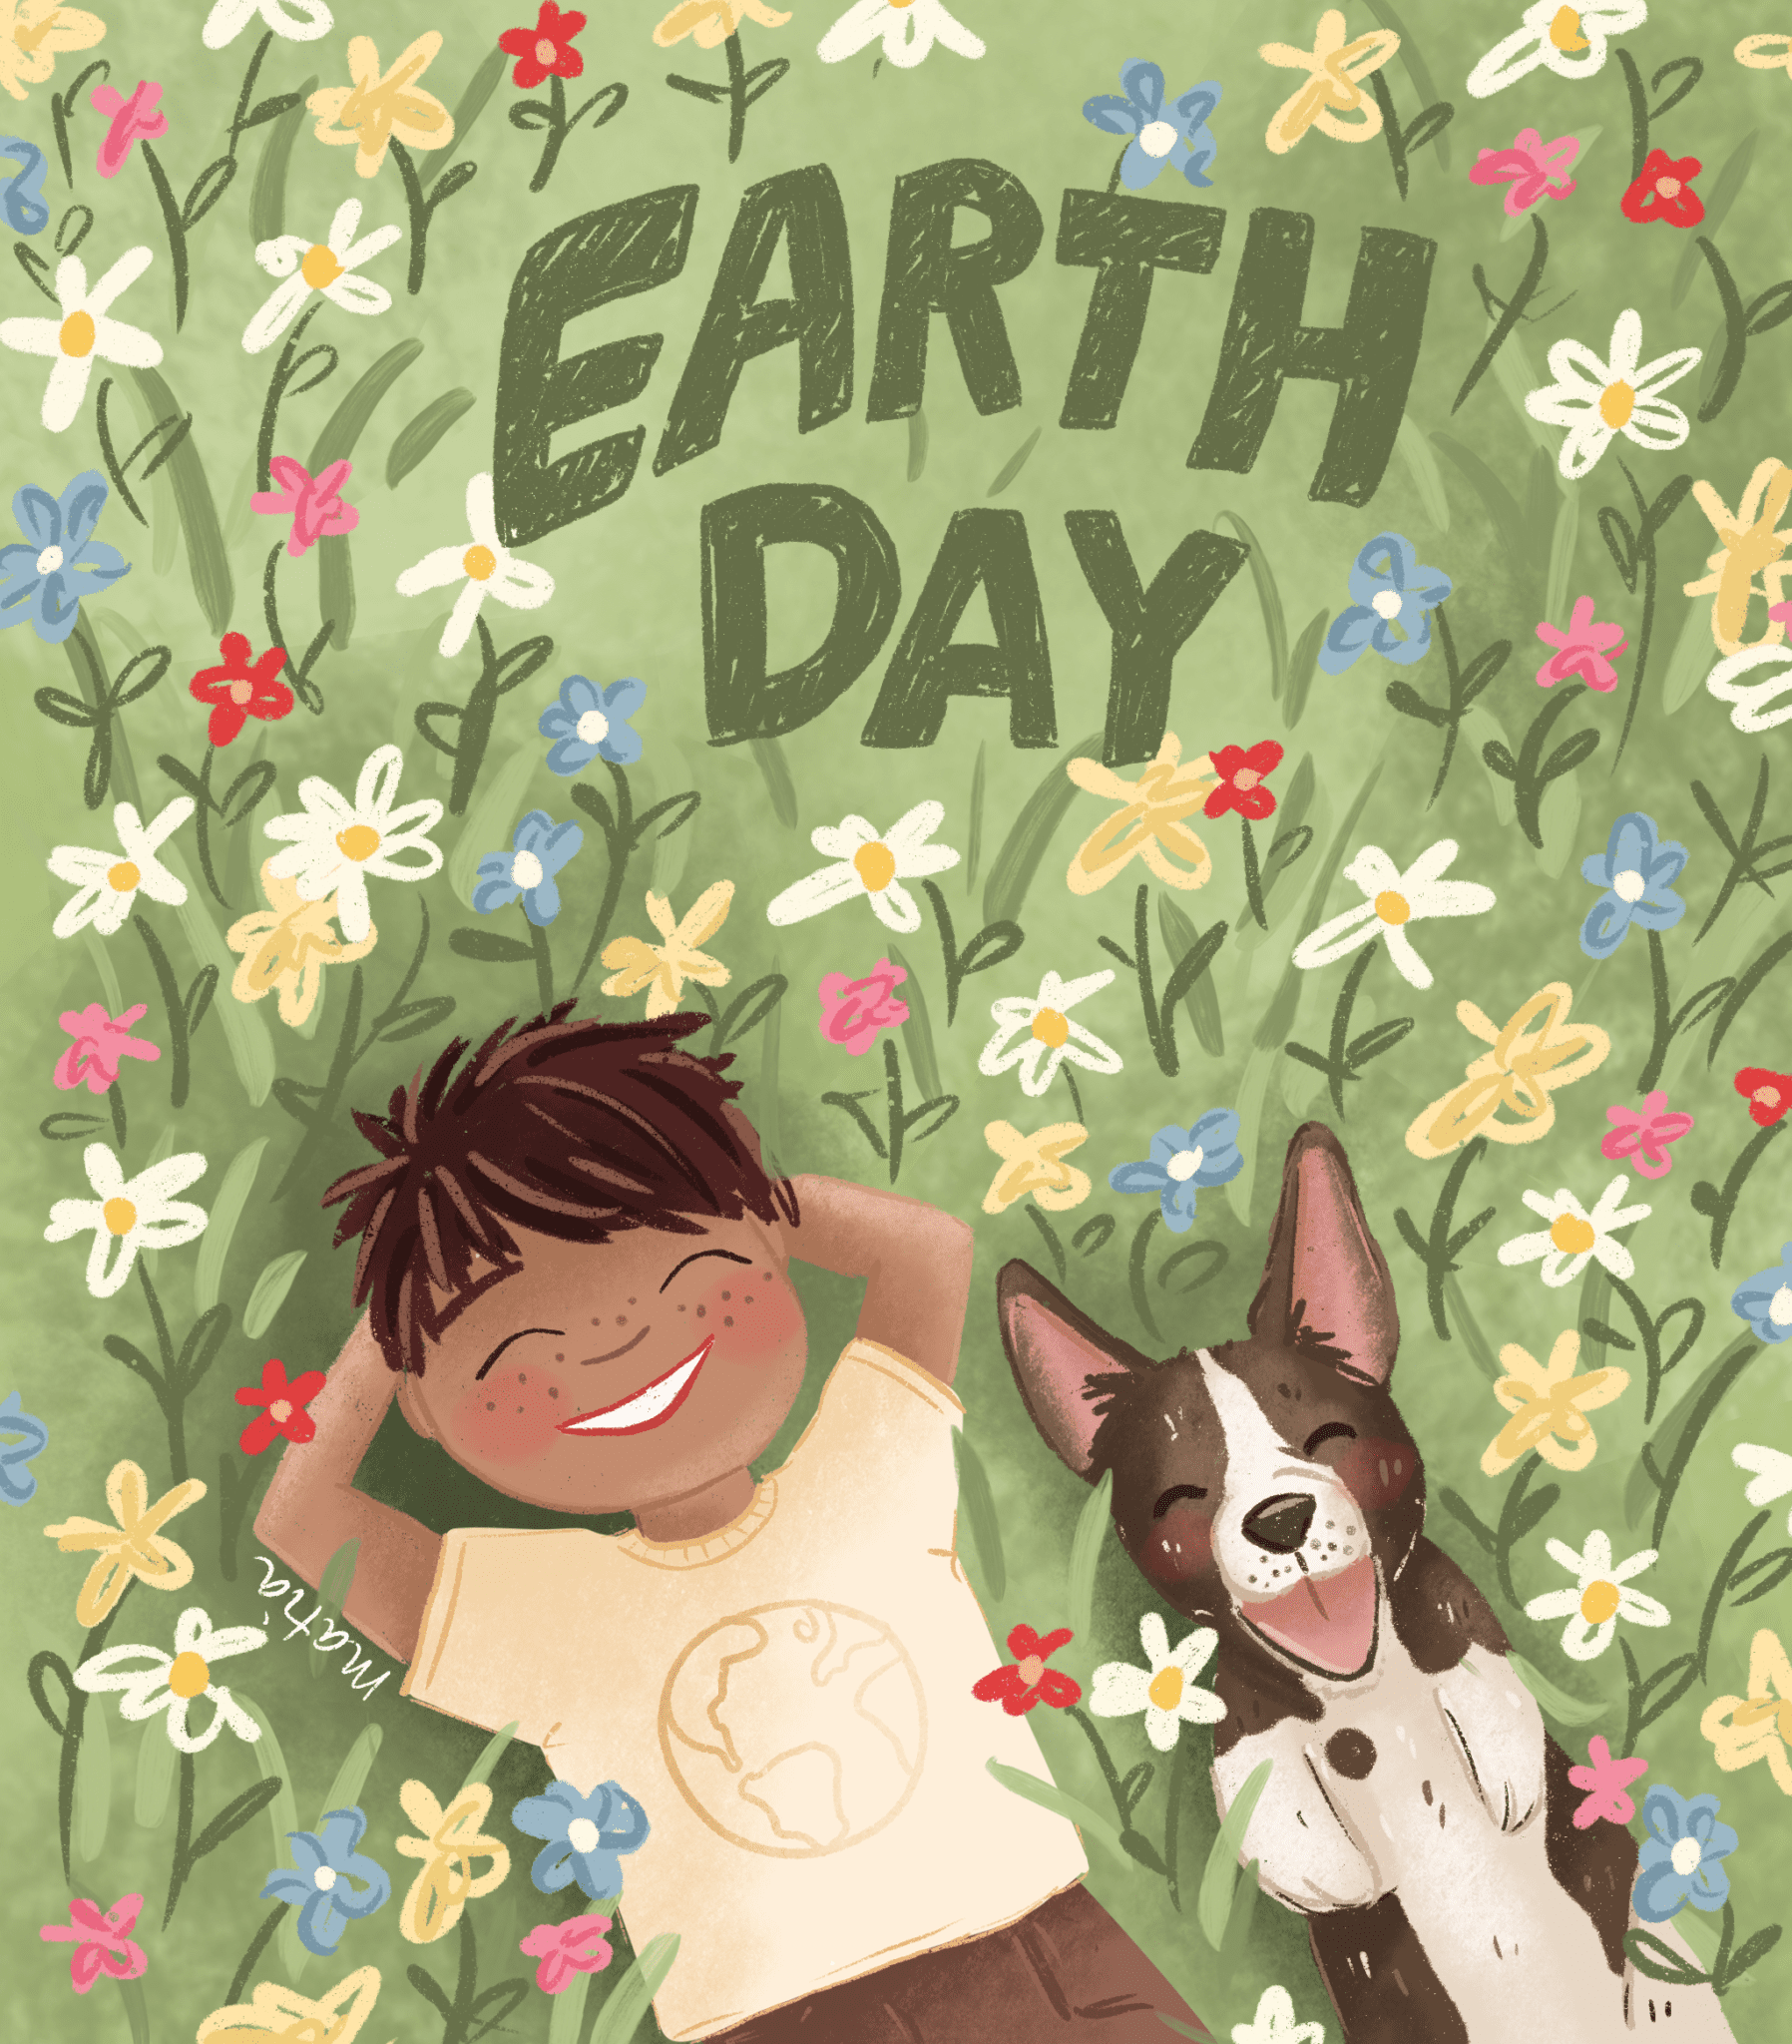 Je bekijkt nu Happy Earth Day!